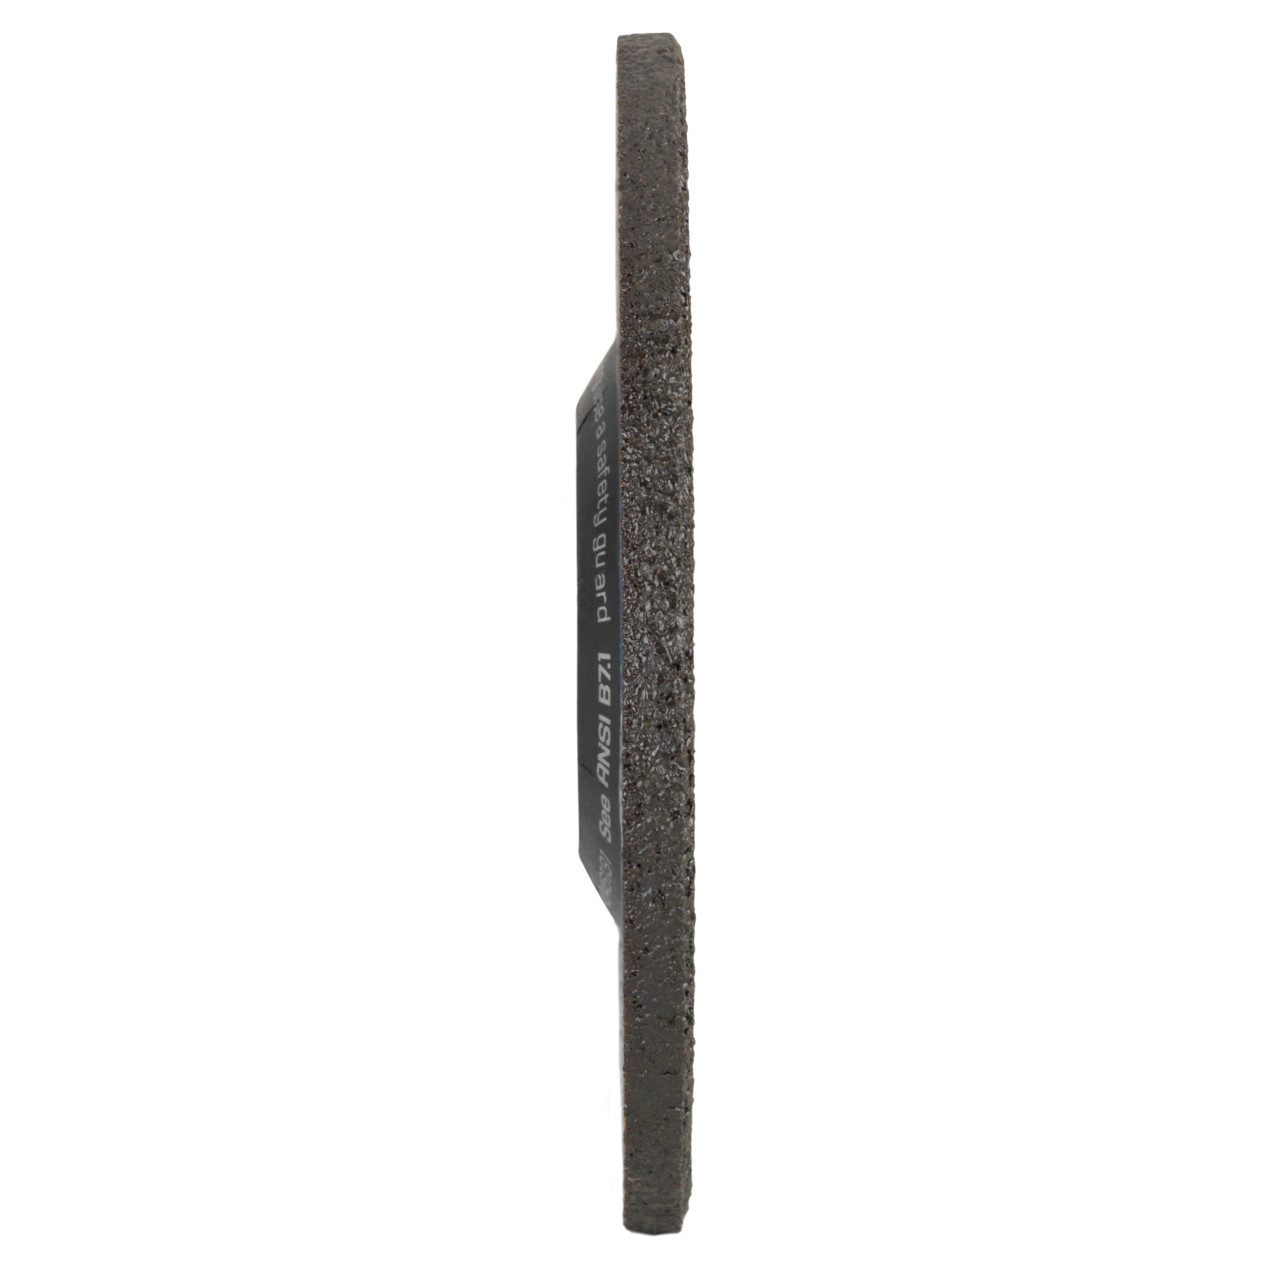 TYROLIT slijpschijf DxUxH 230x4x22,23 2in1 voor staal en roestvrij staal, vorm: 27 - offsetuitvoering, Art. 5406